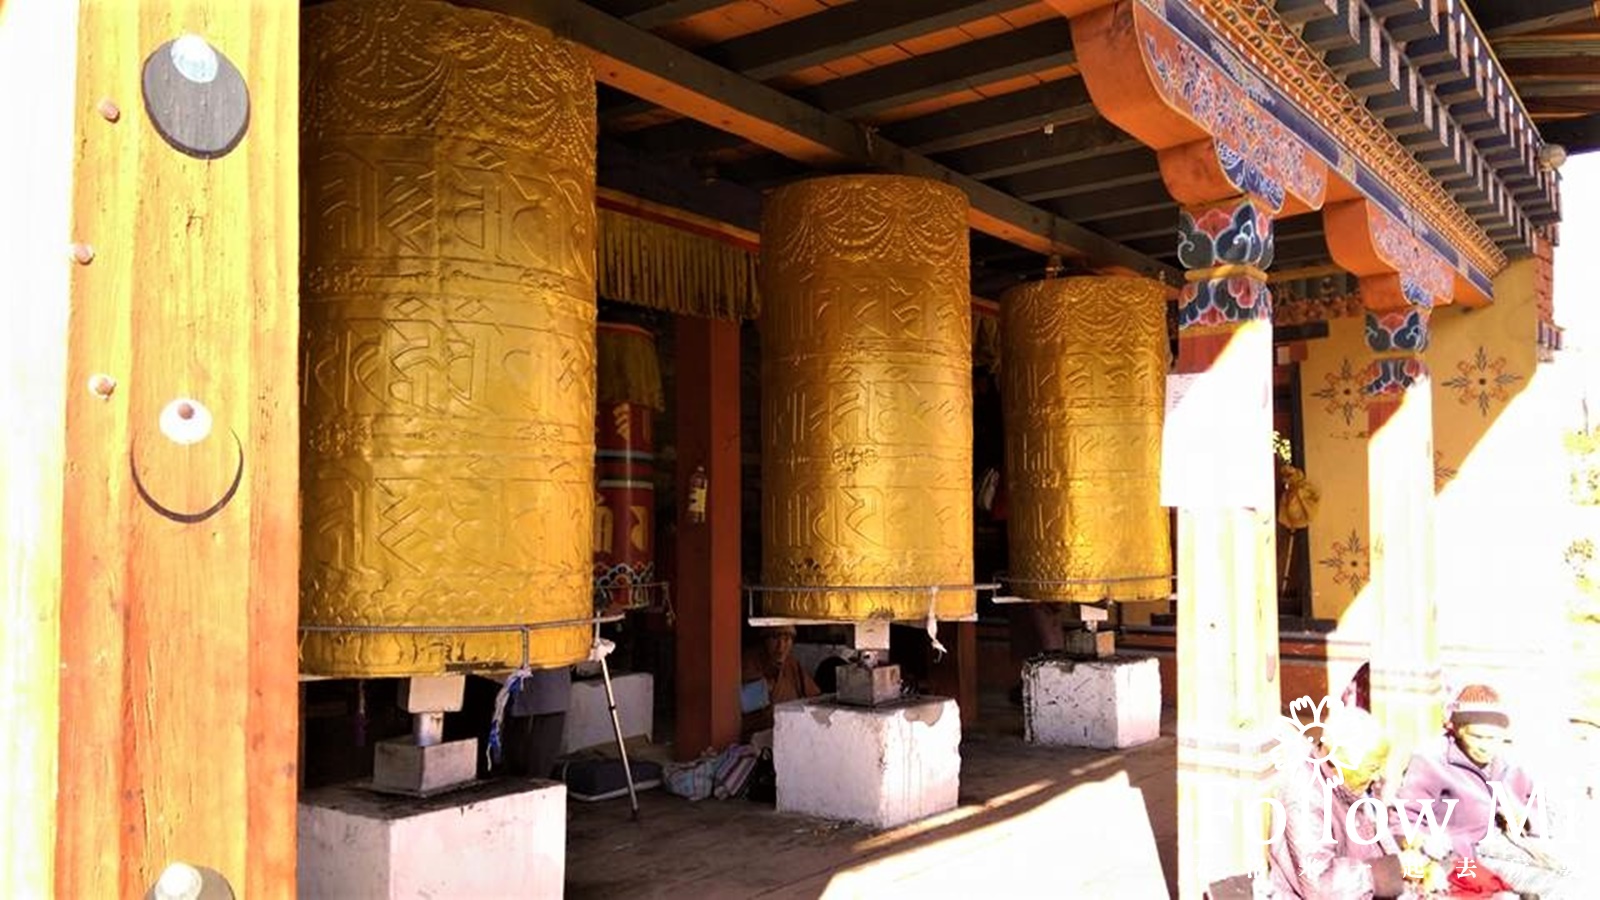 不丹國家紀念佛塔,不丹國王,不丹旅遊,不丹旅遊自由行,不丹自由行,扎西丘宗